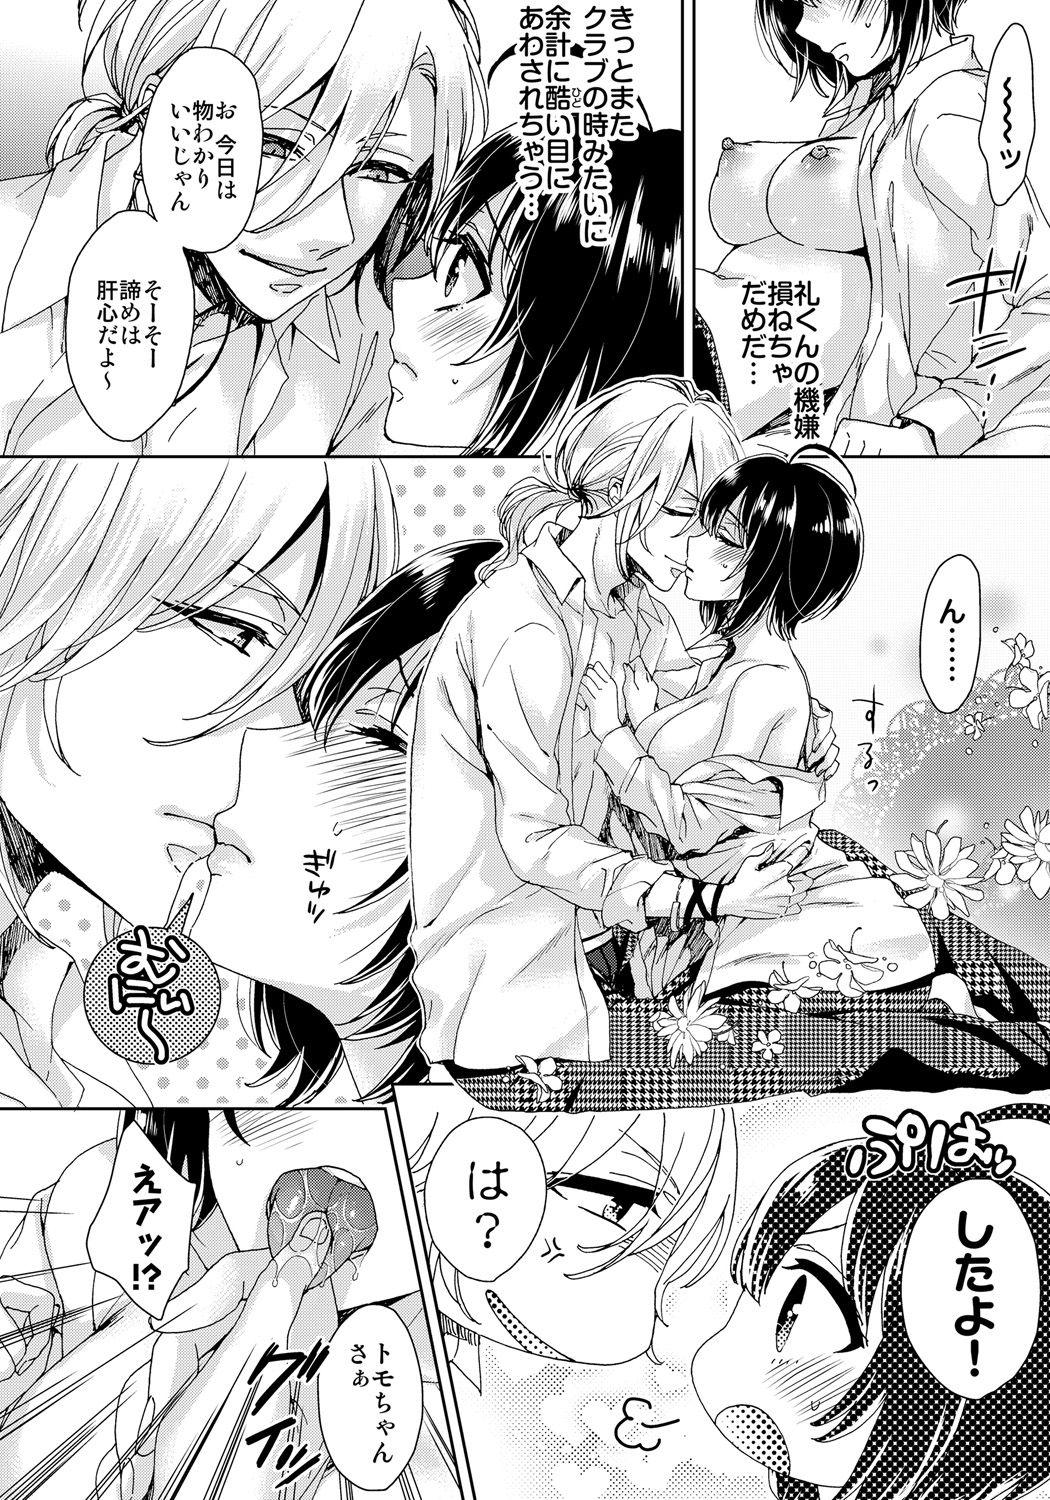 Gostosas [Saotome Mokono] Ijimerare ~"Onna" no Boku to Kainushi Sannin~ 8 Teen Sex - Page 8